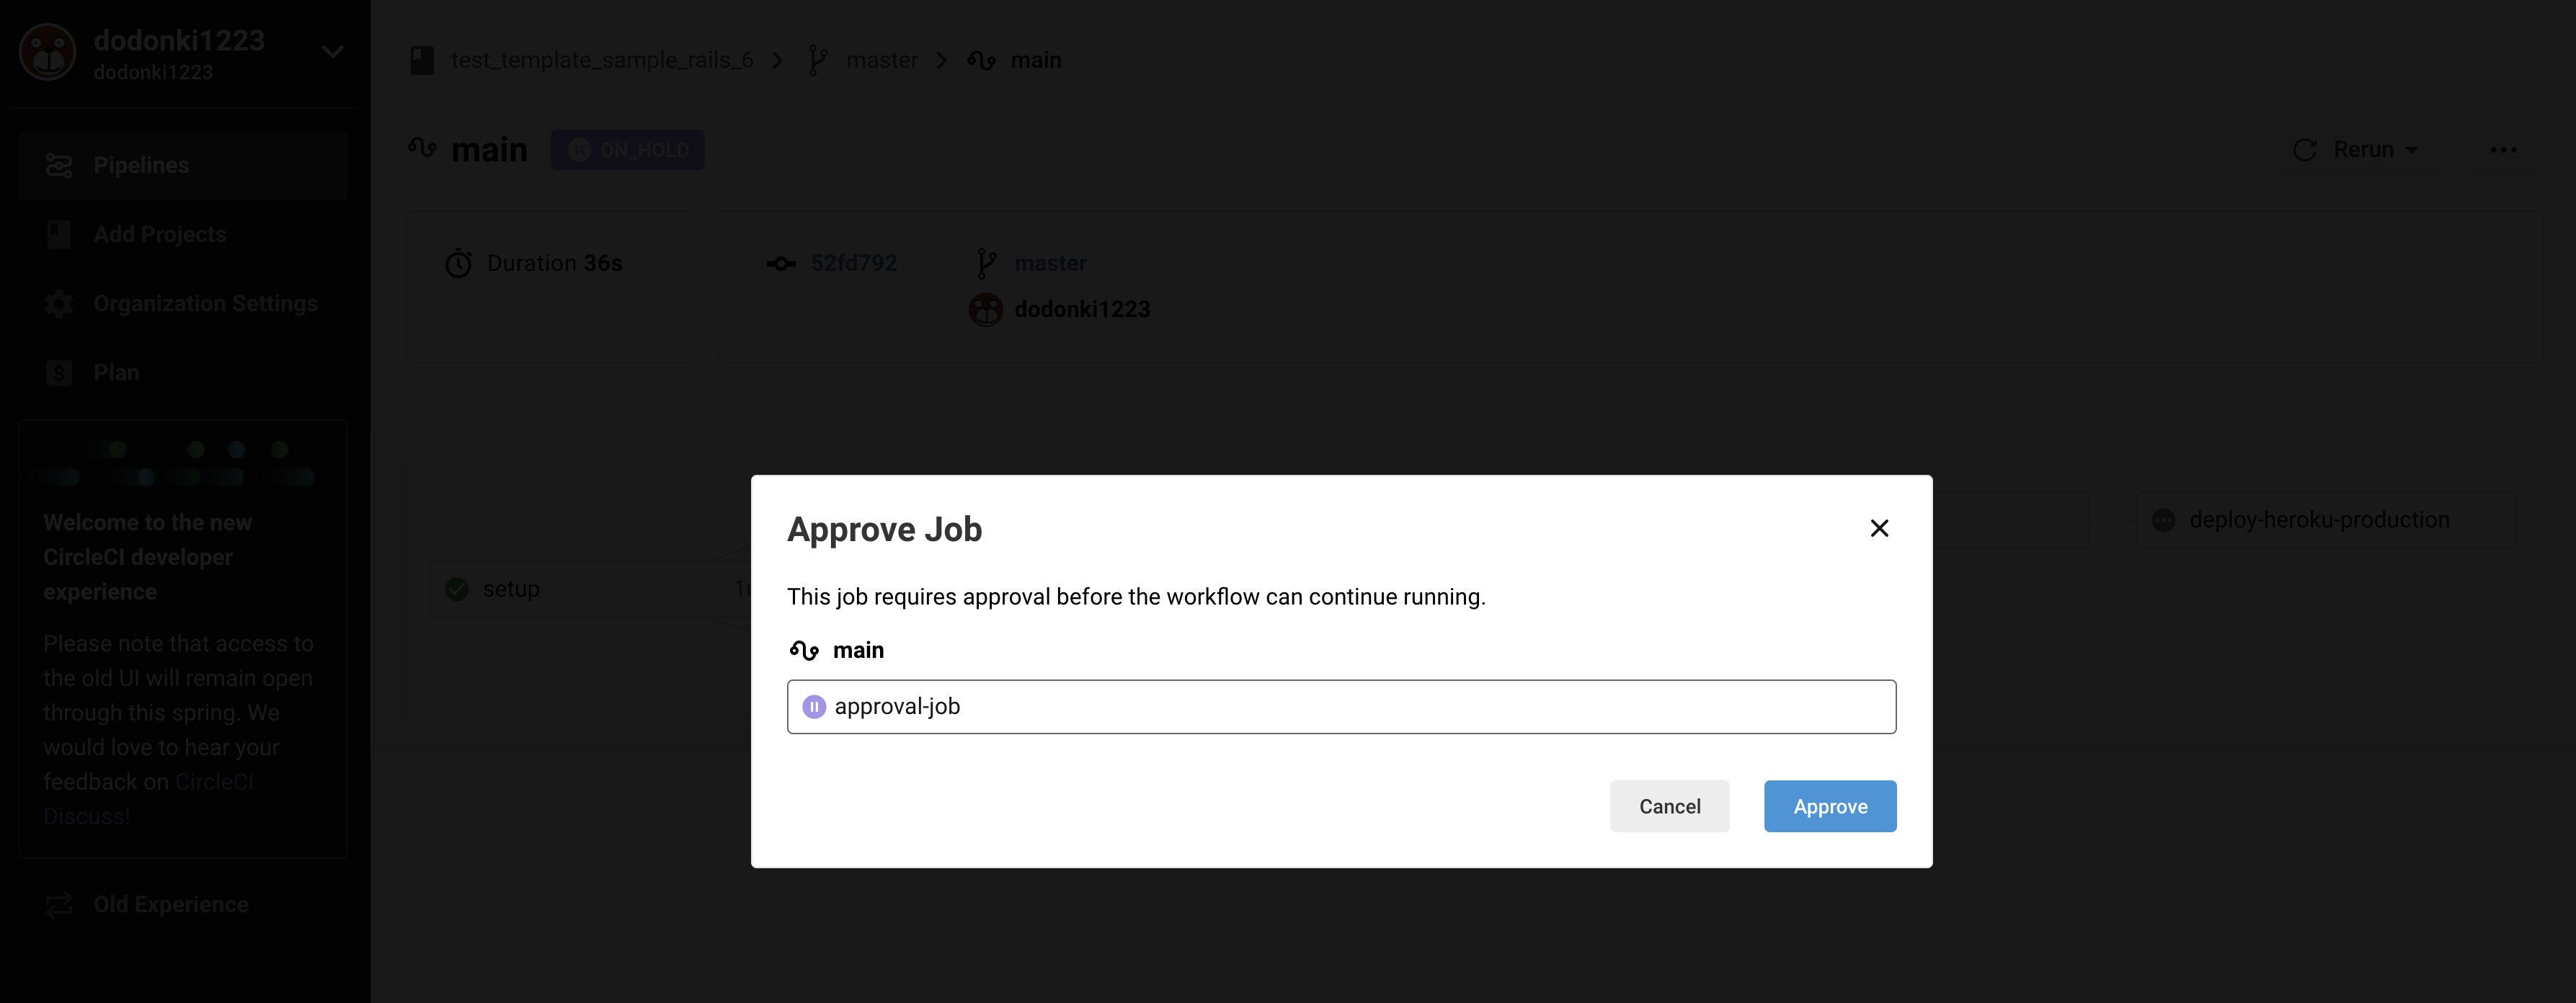 06_approve_job